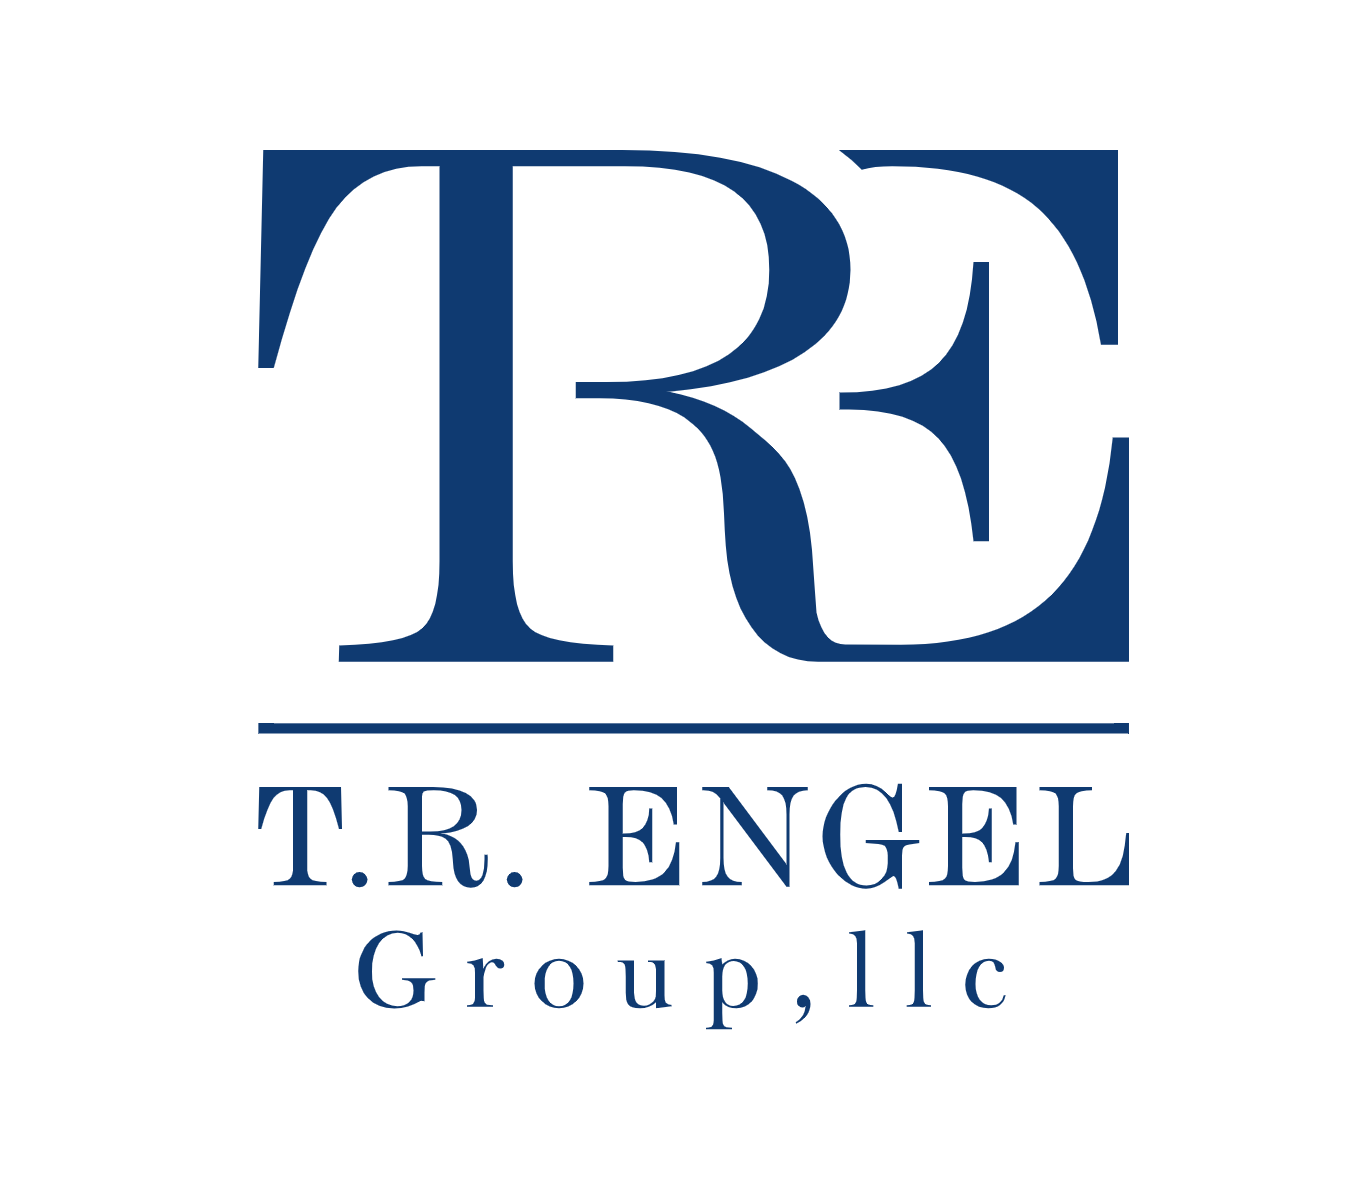 T.R. ENGEL Group